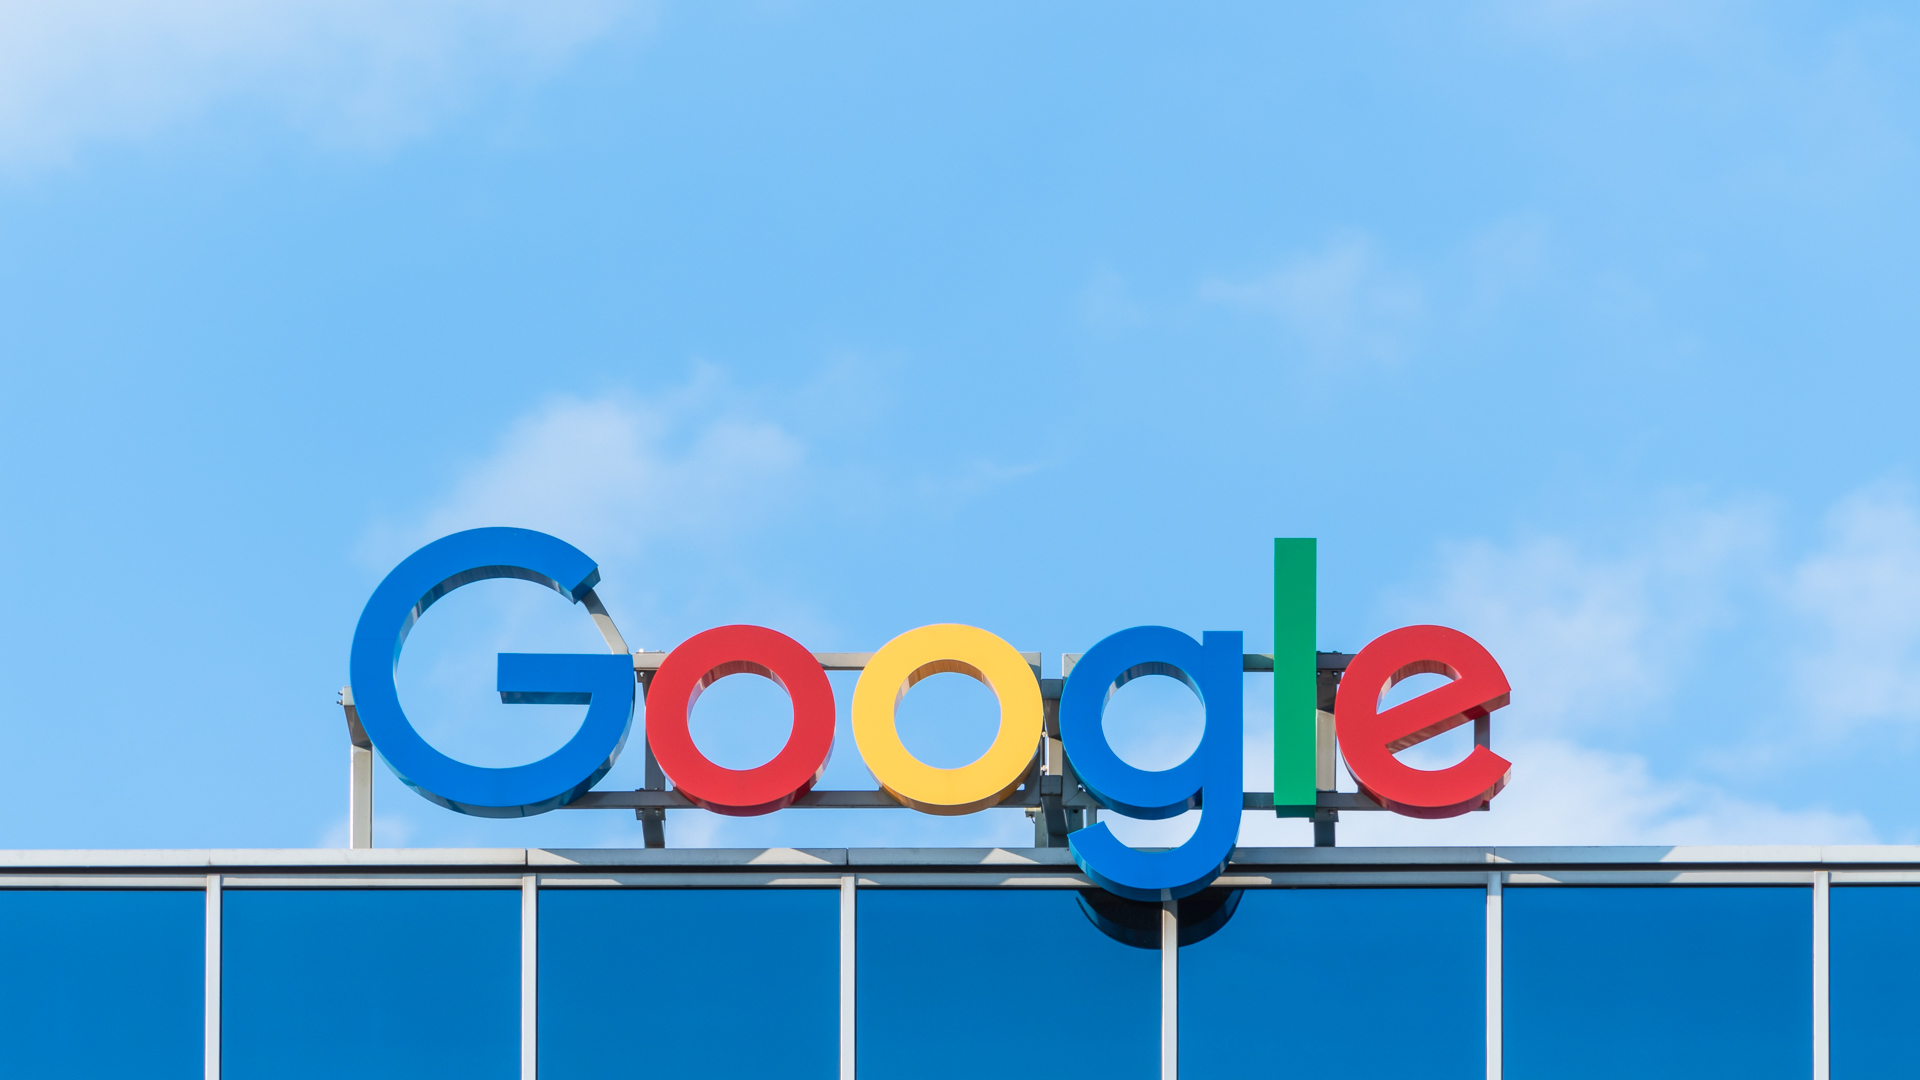 Le bénéfice trimestriel du propriétaire de Google augmente de plus de deux tiers - Burzovnisvet.cz - Actions, bourse, forex, matières premières, IPO, obligations